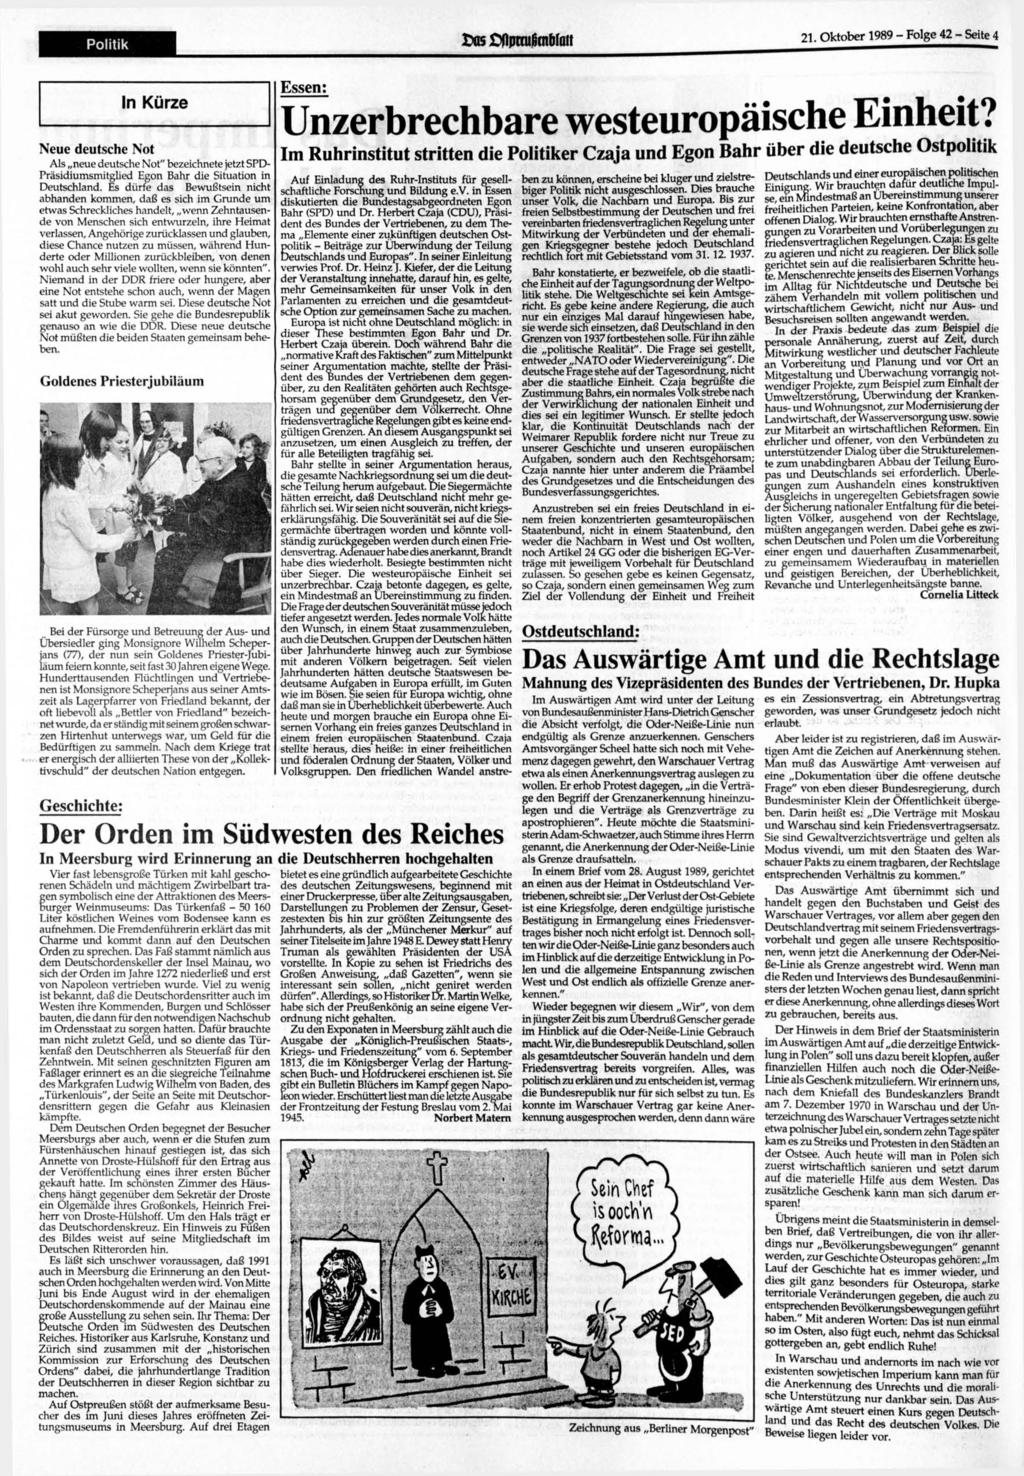 Politik 05 flptcufknbfoit 21. 1989 - Folge 42 - Seite 4 In Kürze Neue deutsche Not Als neue deutsche Not" bezeichnete jetzt SPD- Präsidiumsmitglied Egon Bahr die Situation in Deutschland.